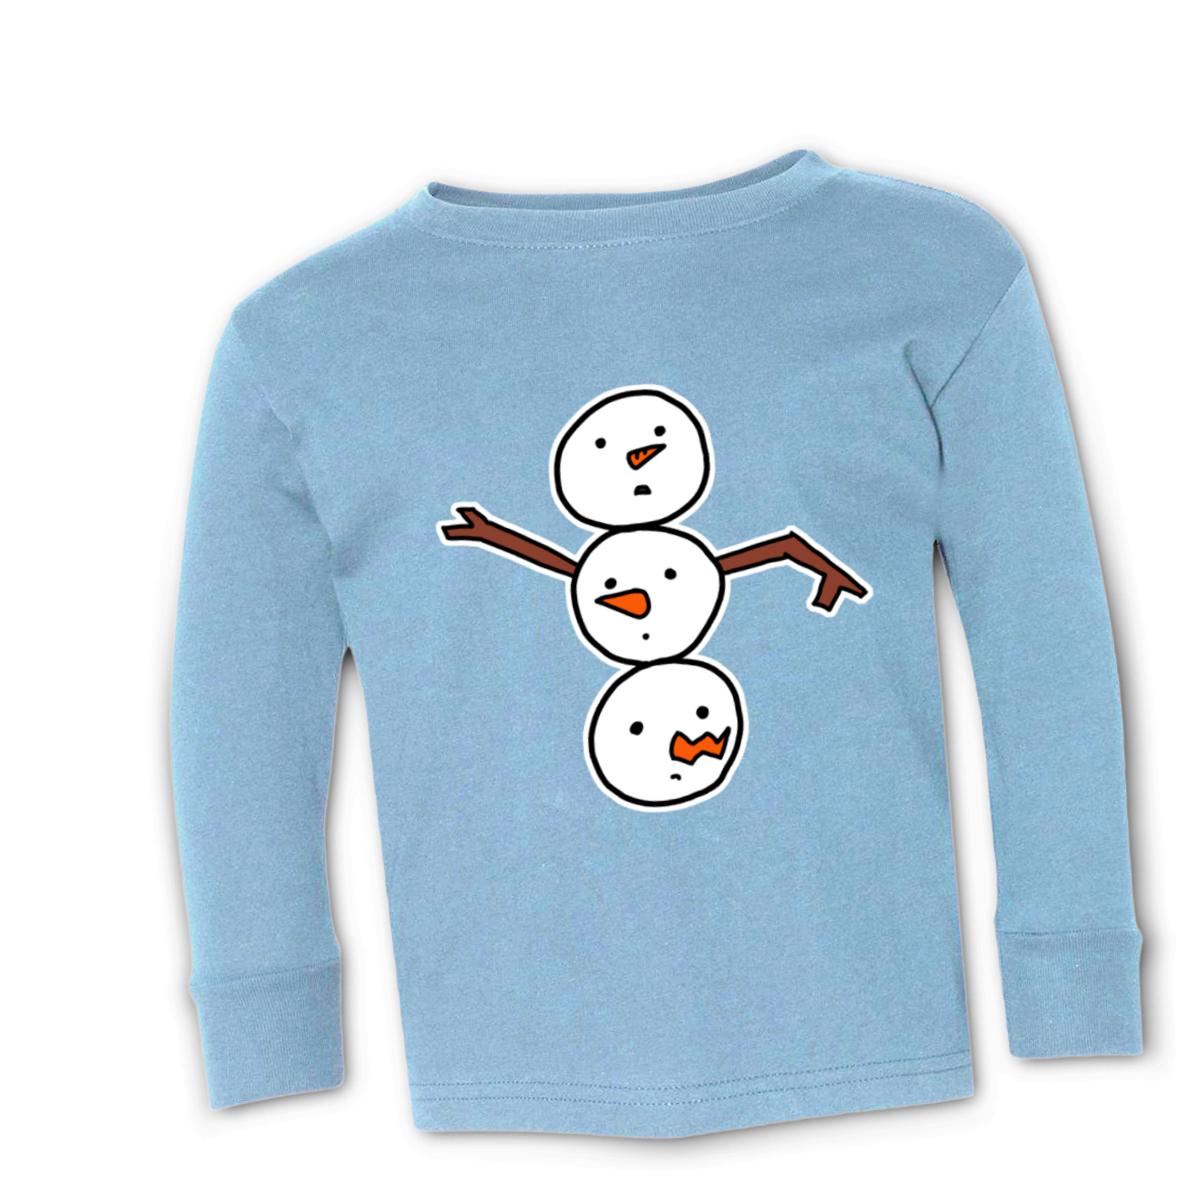 Snowman All Heads Toddler Long Sleeve Tee 4T light-blue